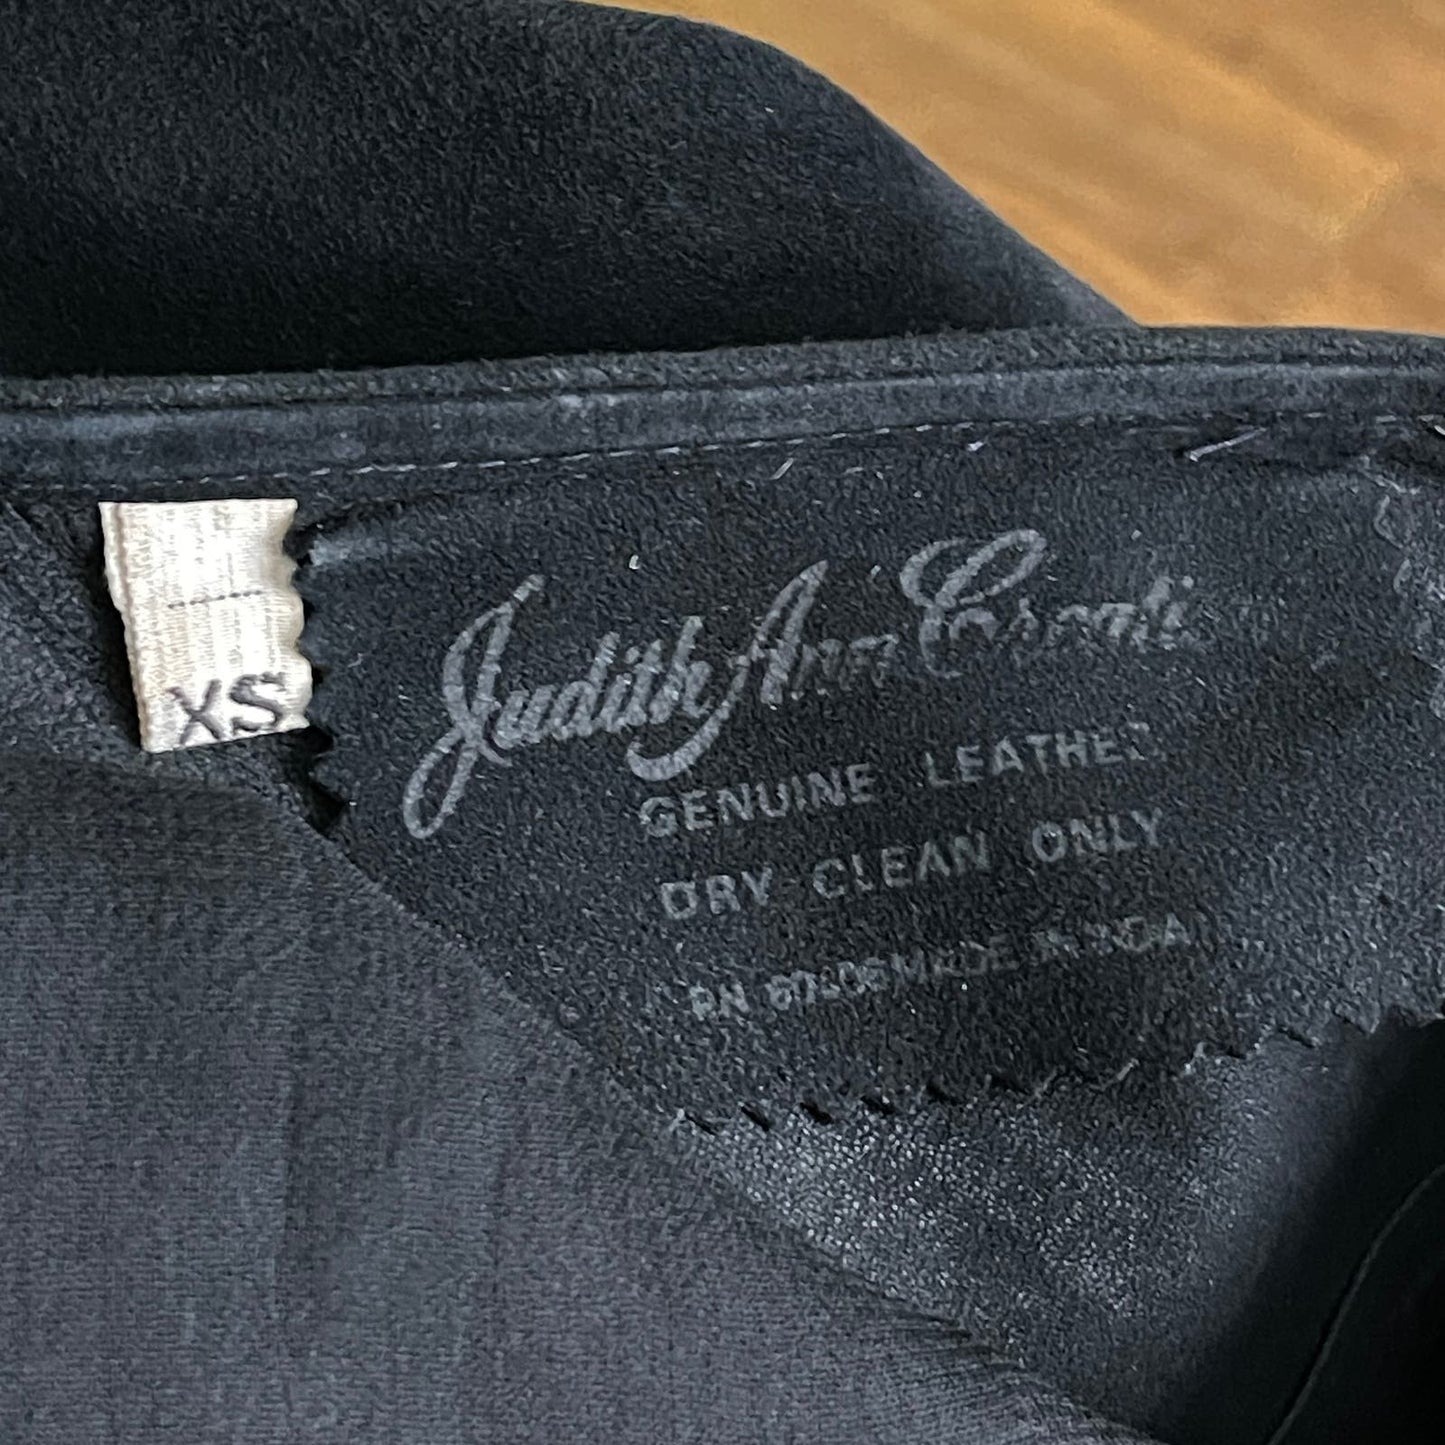 Vintage 90s Black Suede Leather Dress V Back Beaded Design Judith Ann Creations